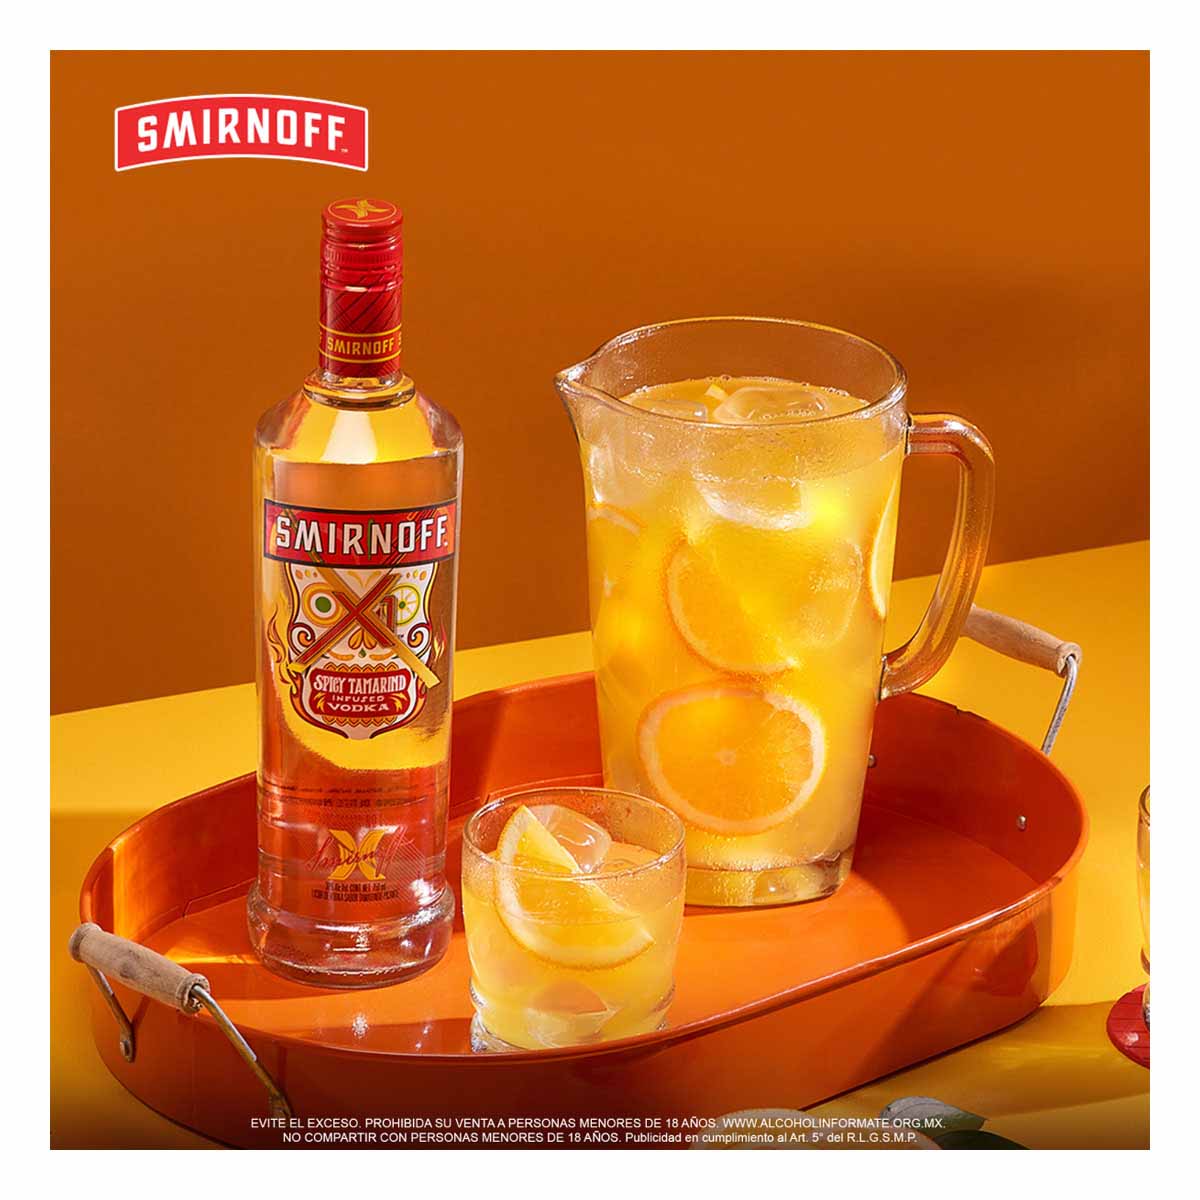 Vodka Smirnoff X1 Tamarindo 750 ml